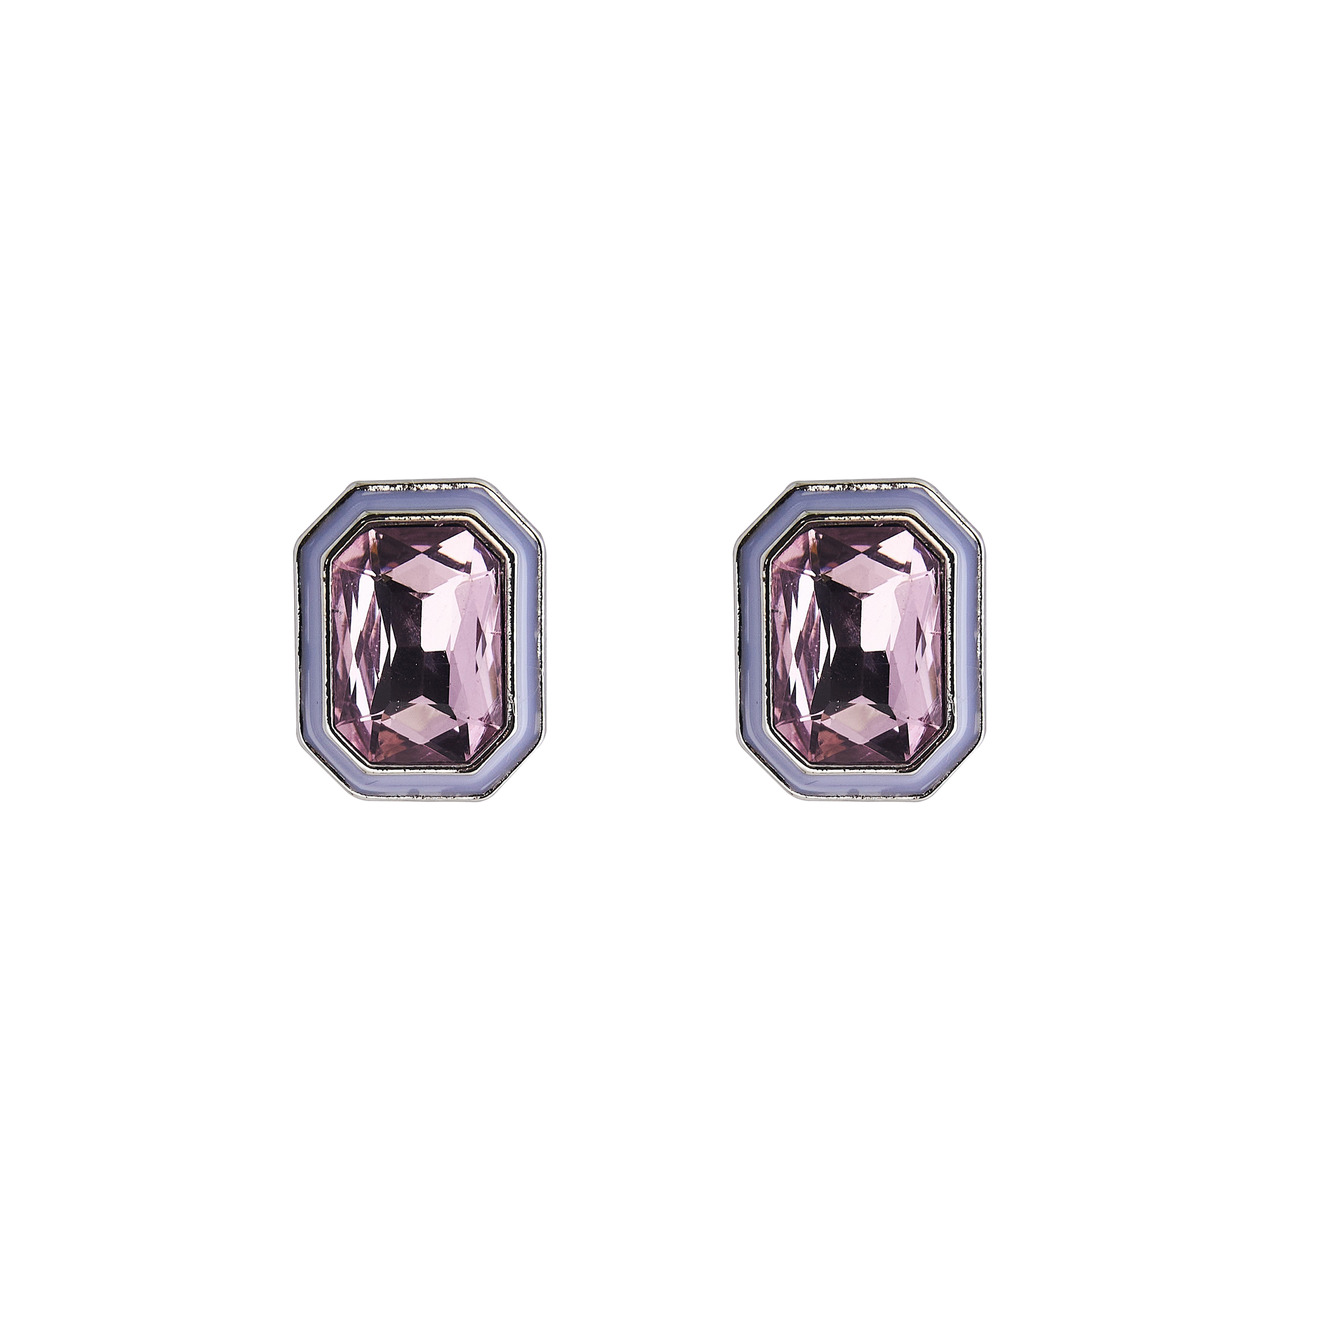 Herald Percy Серебристые серьги с розовыми кристаллами и белой эмалью herald percy колье чокер с розовыми кристаллами